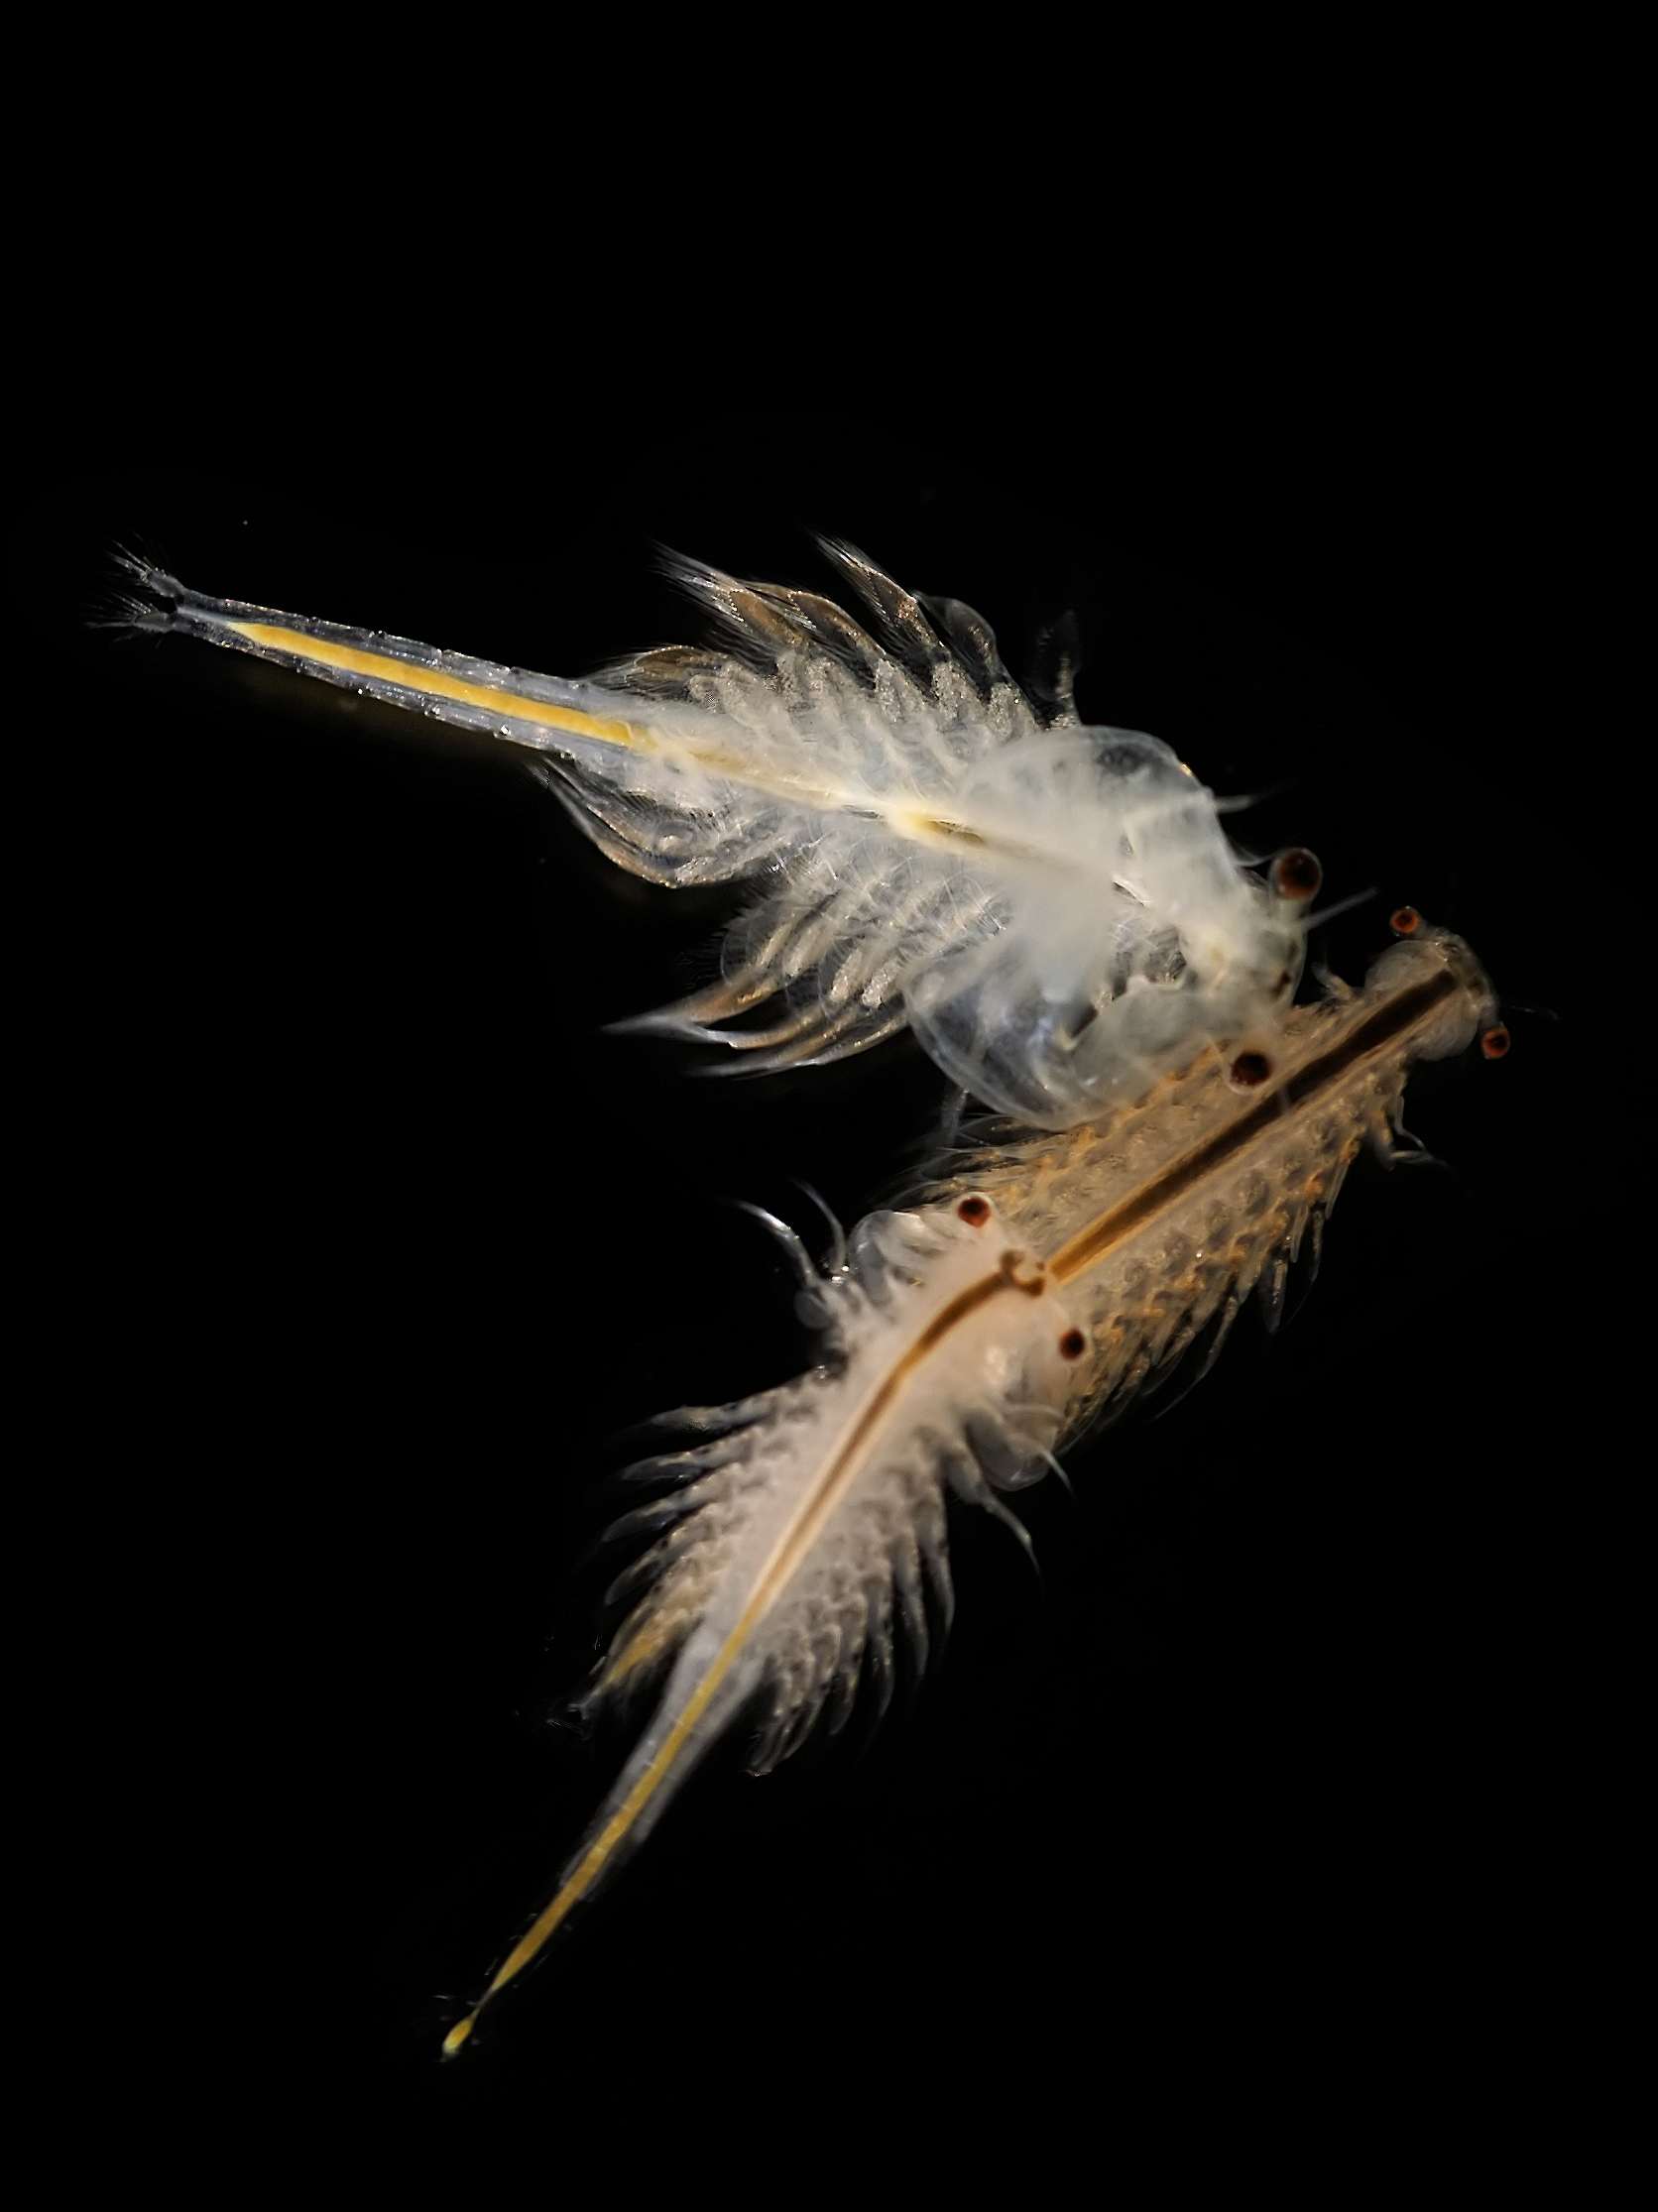 File:Artemia salina 5.jpg - Wikipedia